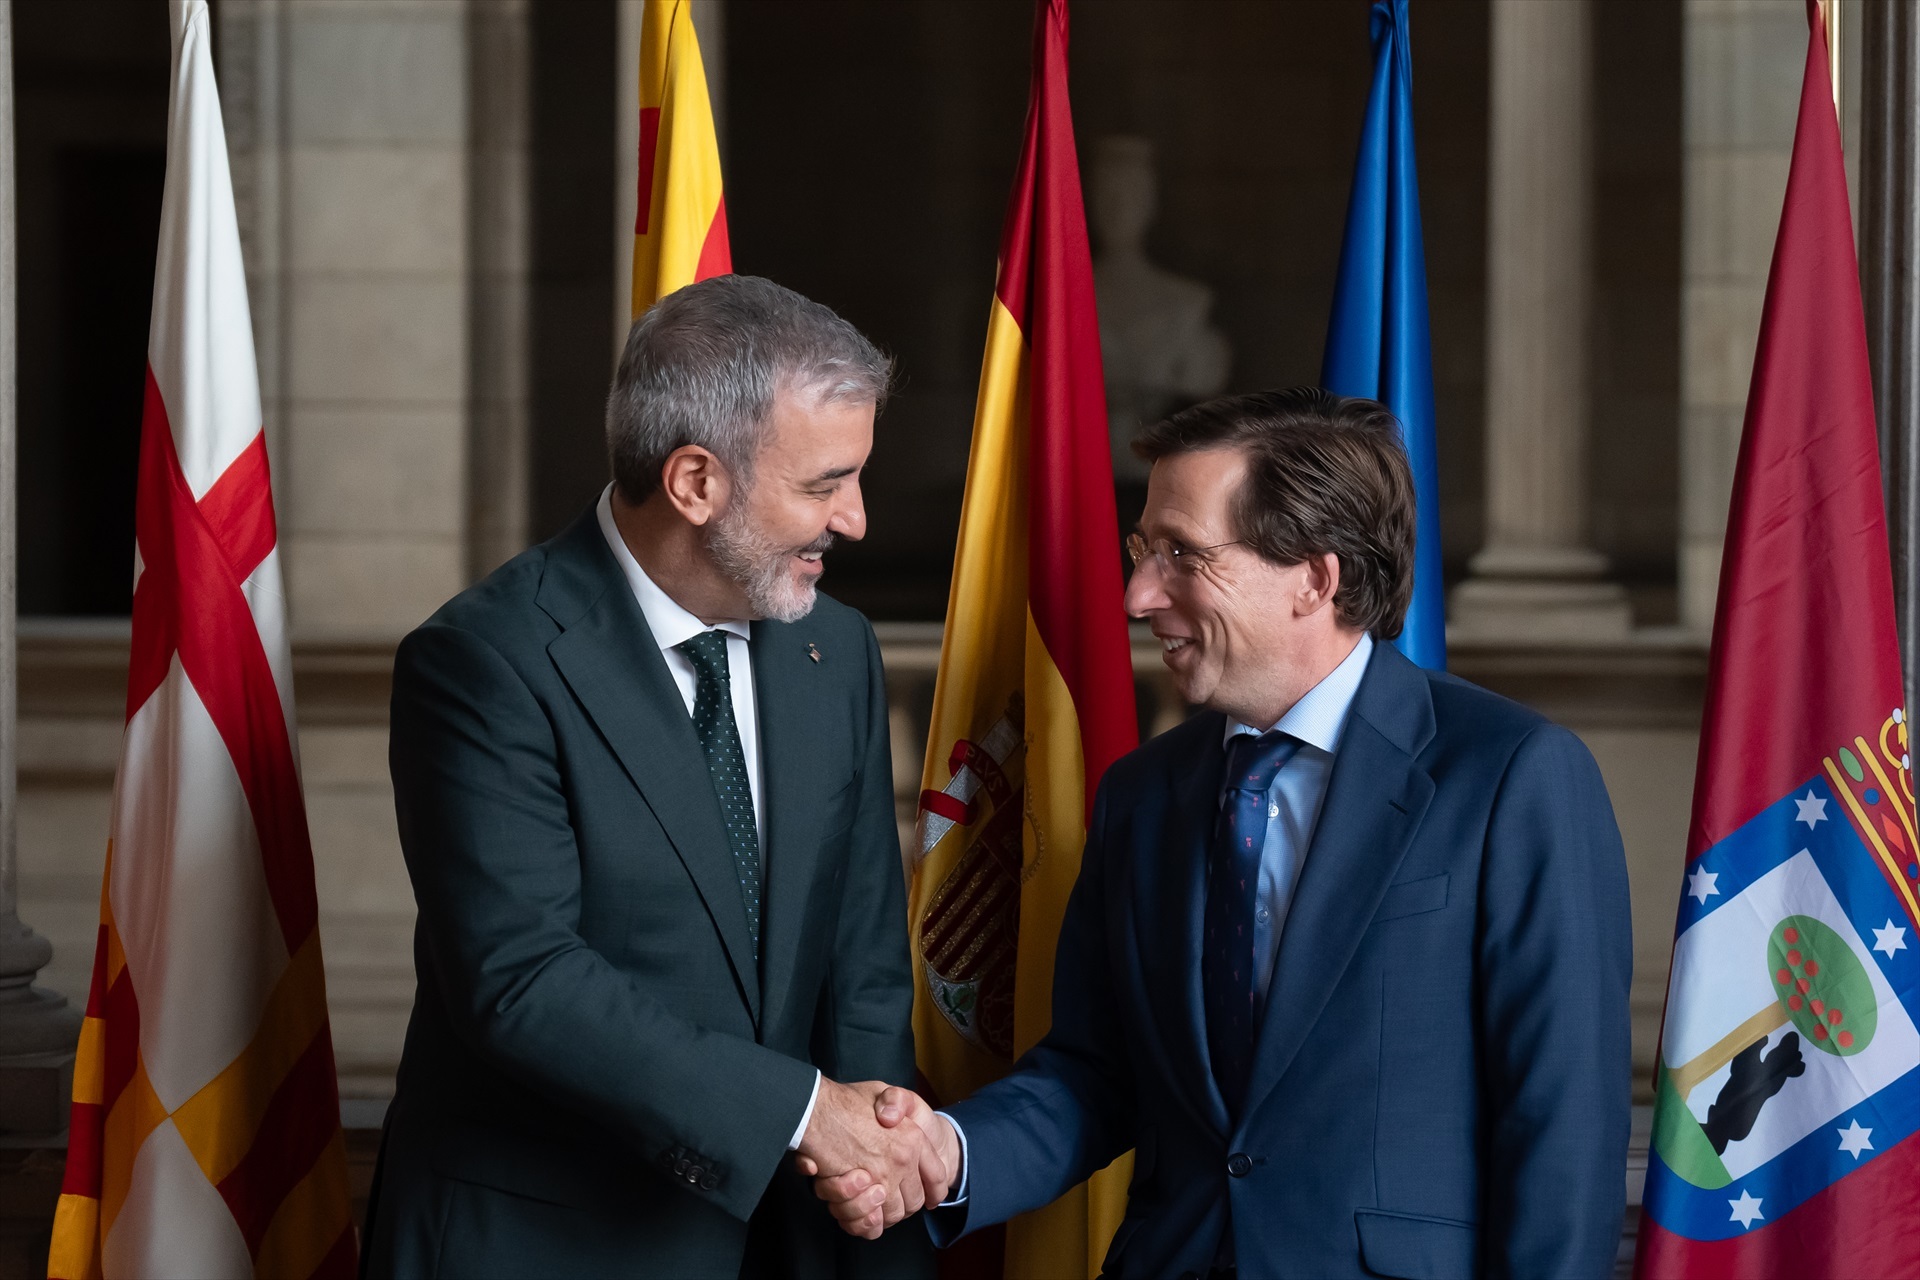 El alcalde de Barcelona, Jaume Collboni, y el alcalde de Madrid, José Luis Martínez-Almeida, en la reunión en el Ayuntamiento de Barcelona. Foto: David Zorrakino / Europa Press